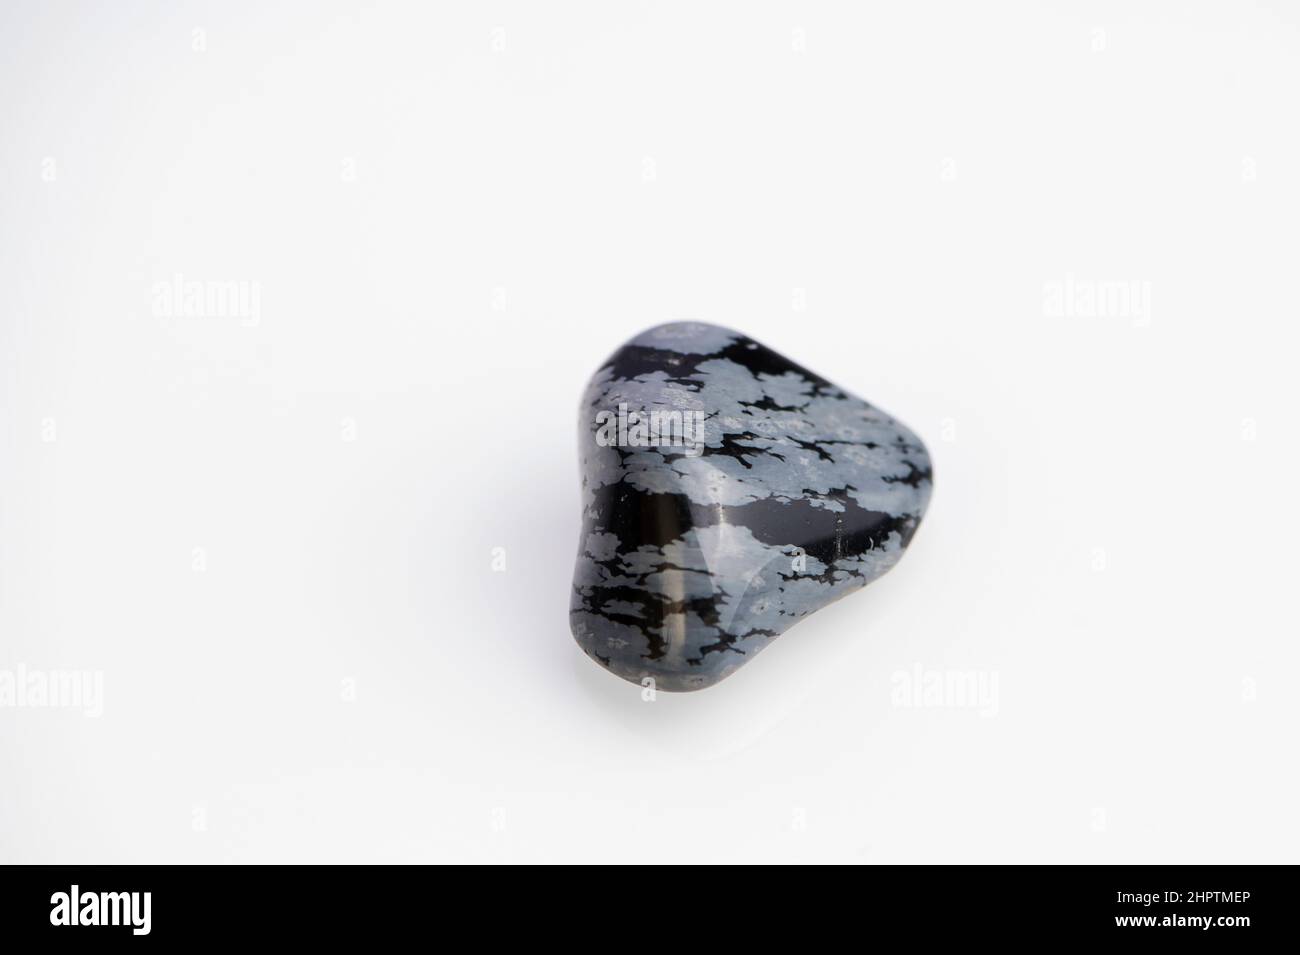 snowflake obsidian gemstone on white background Stock Photo